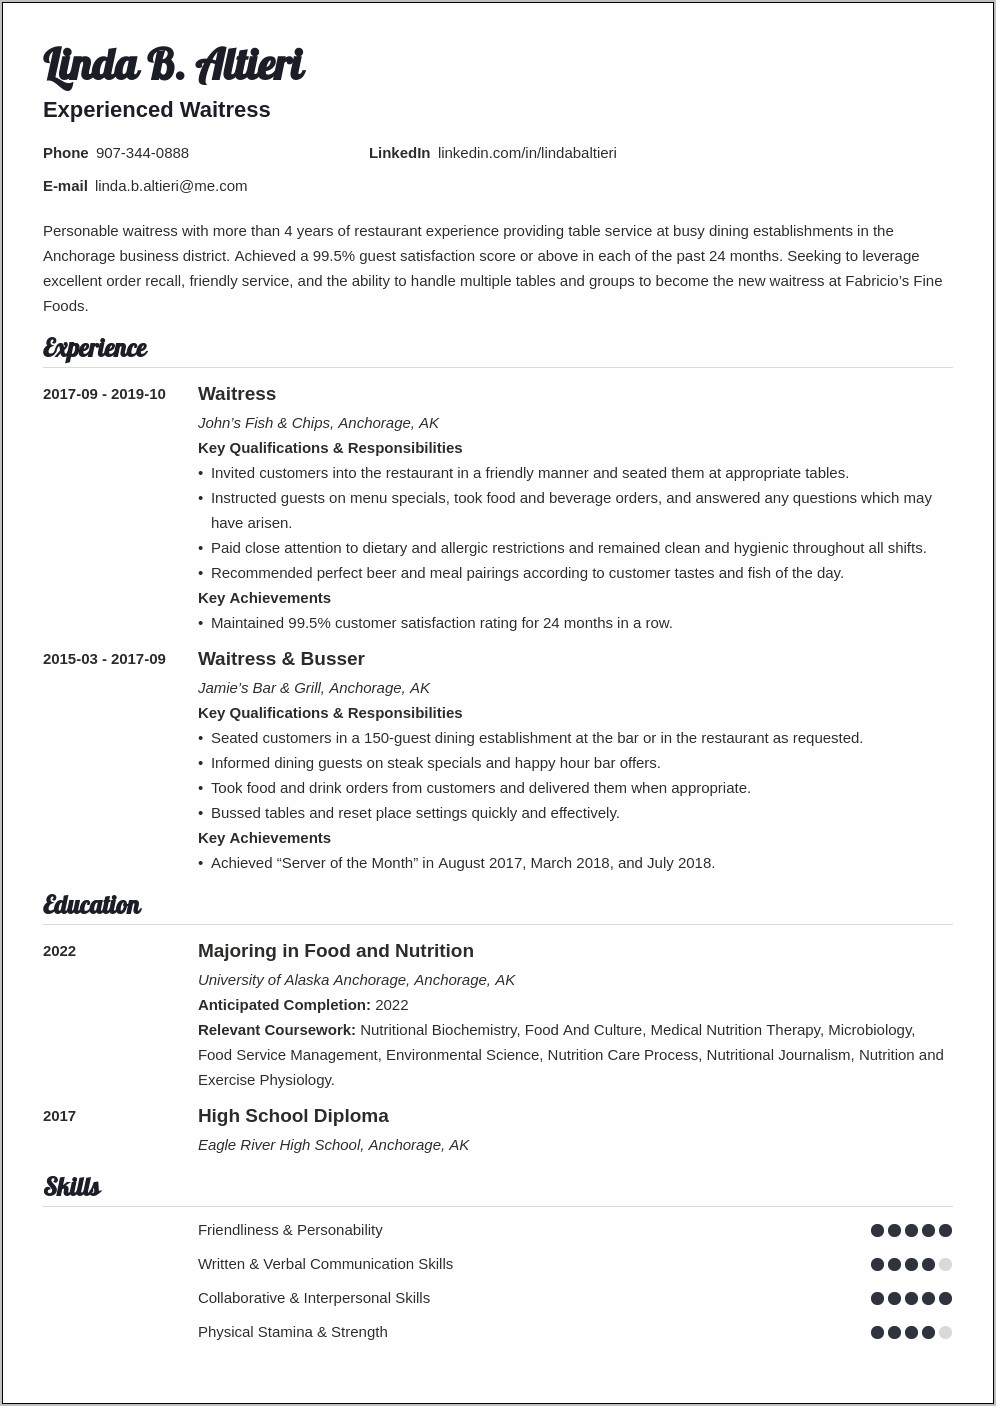 Job Description Of A Waitress Resume